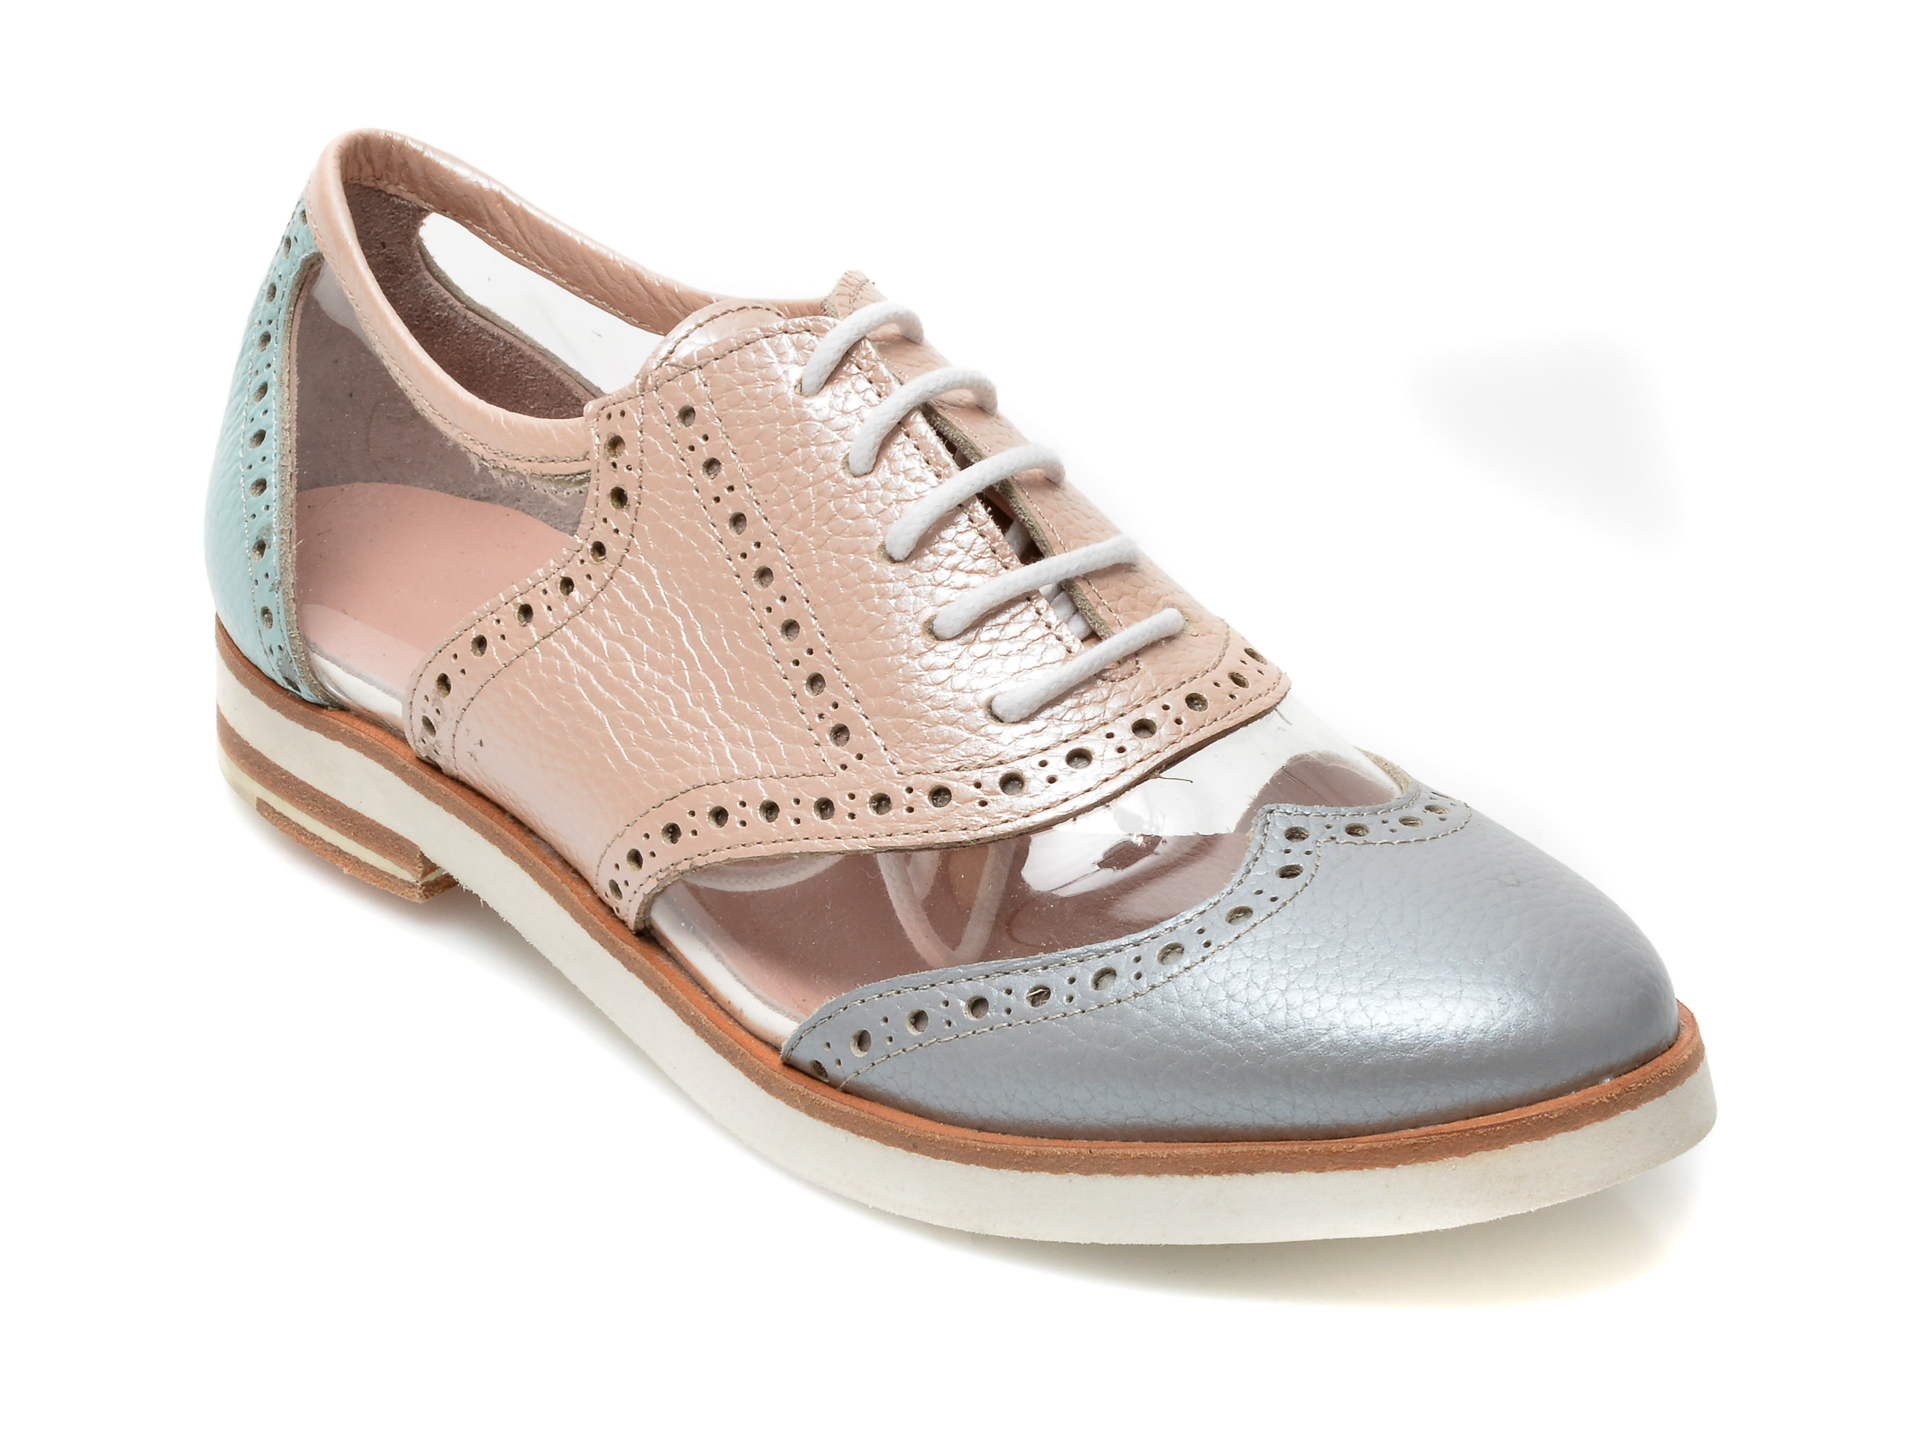 Pantofi LABOUR multicolori, 403, din piele naturala /femei/pantofi imagine noua